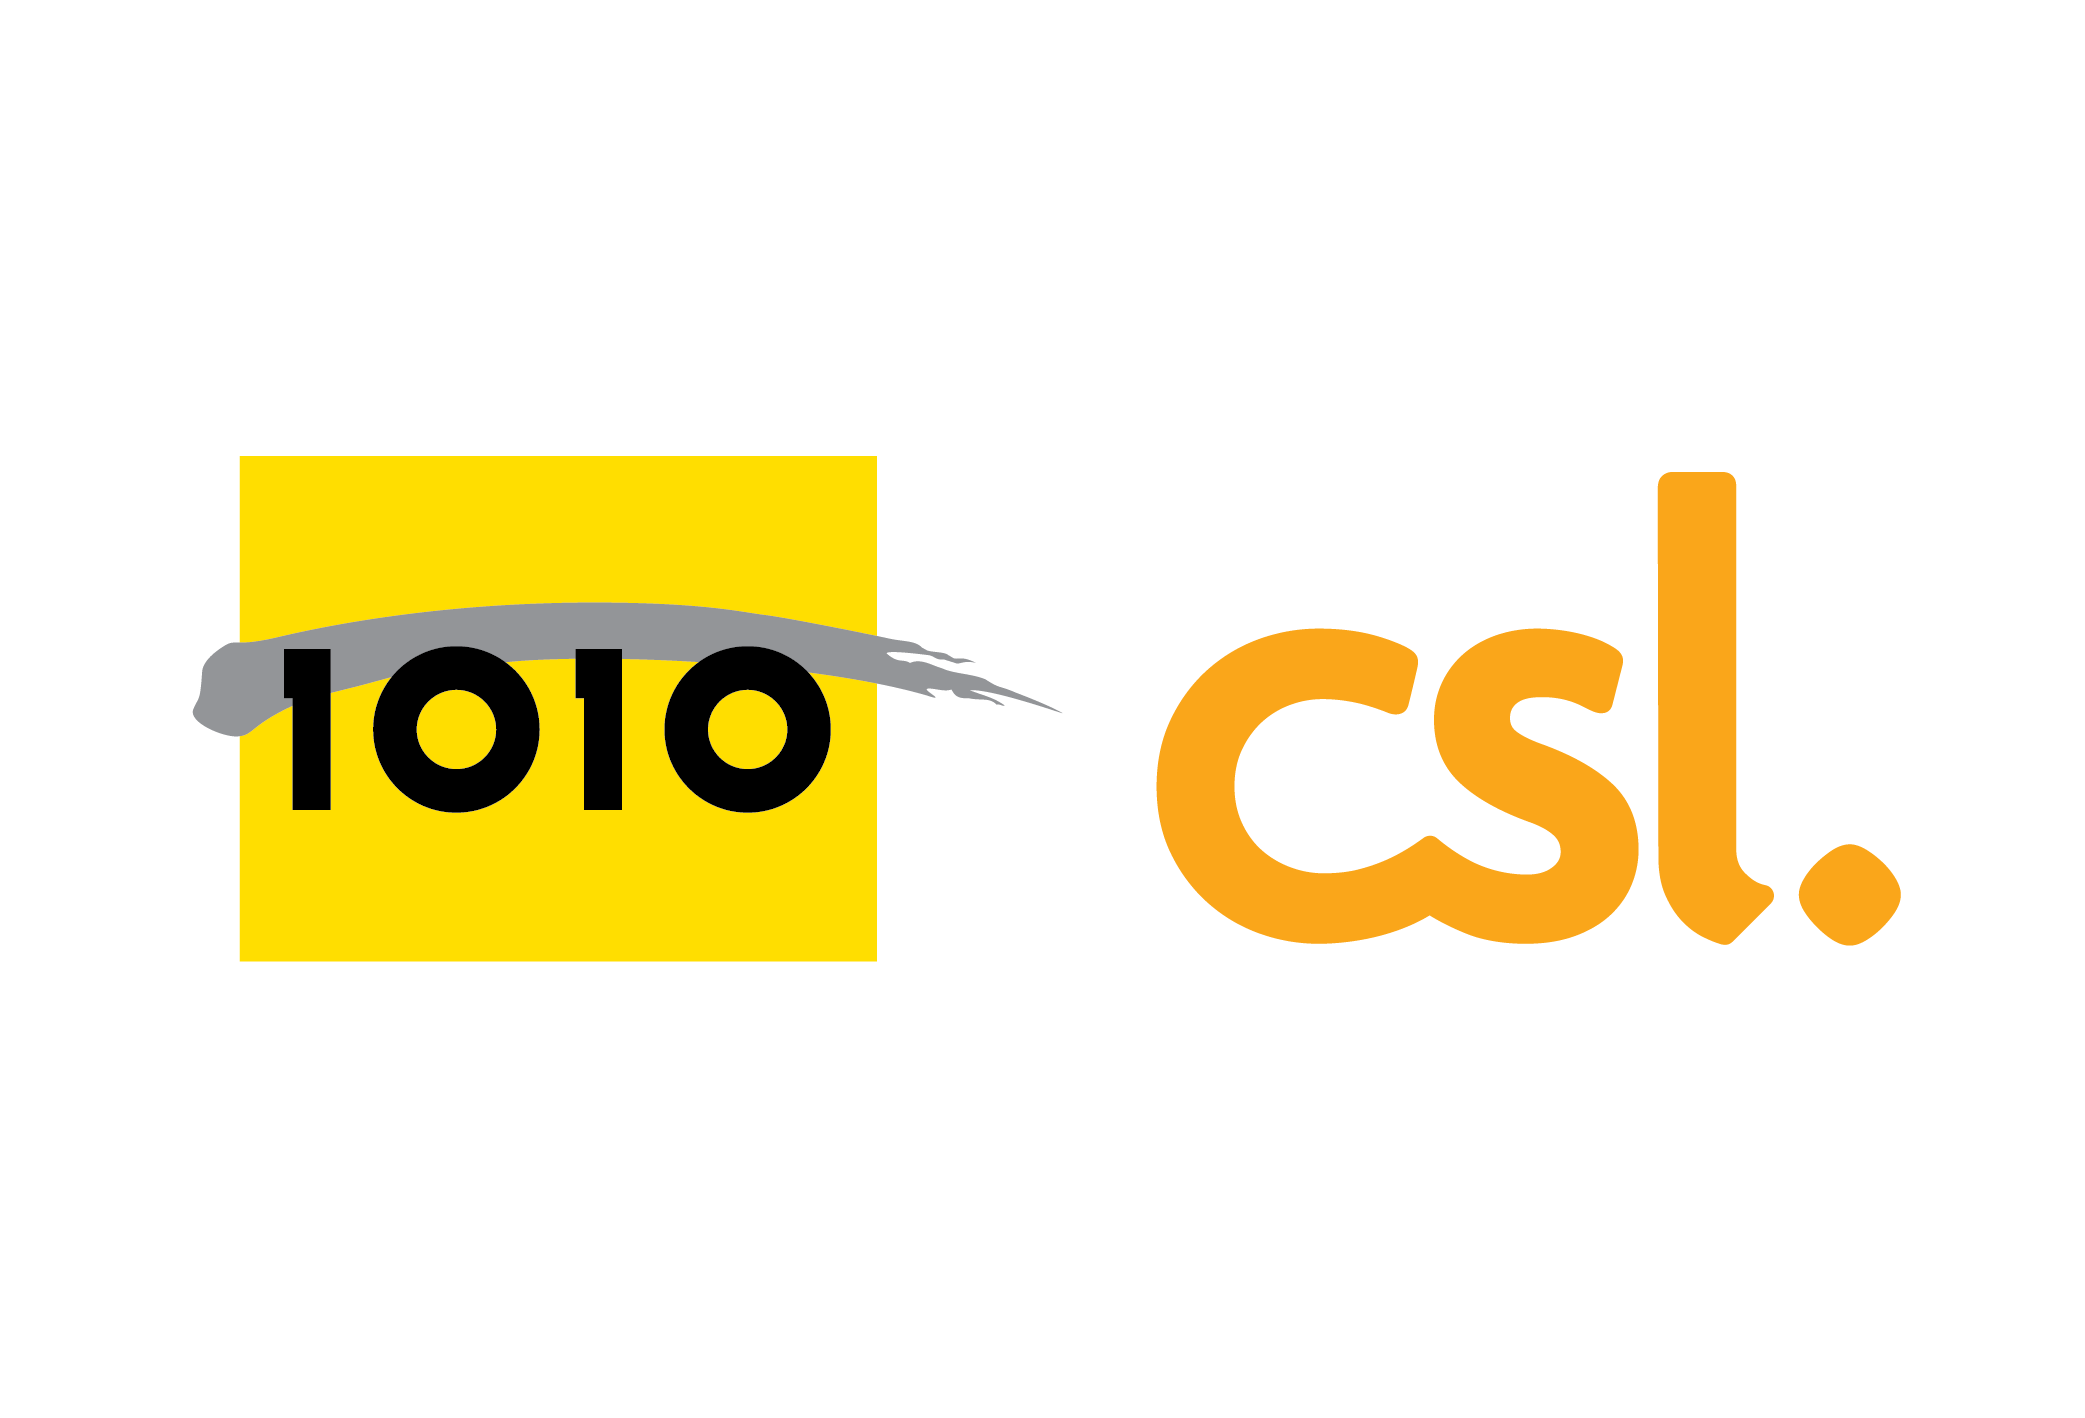 CSL1010